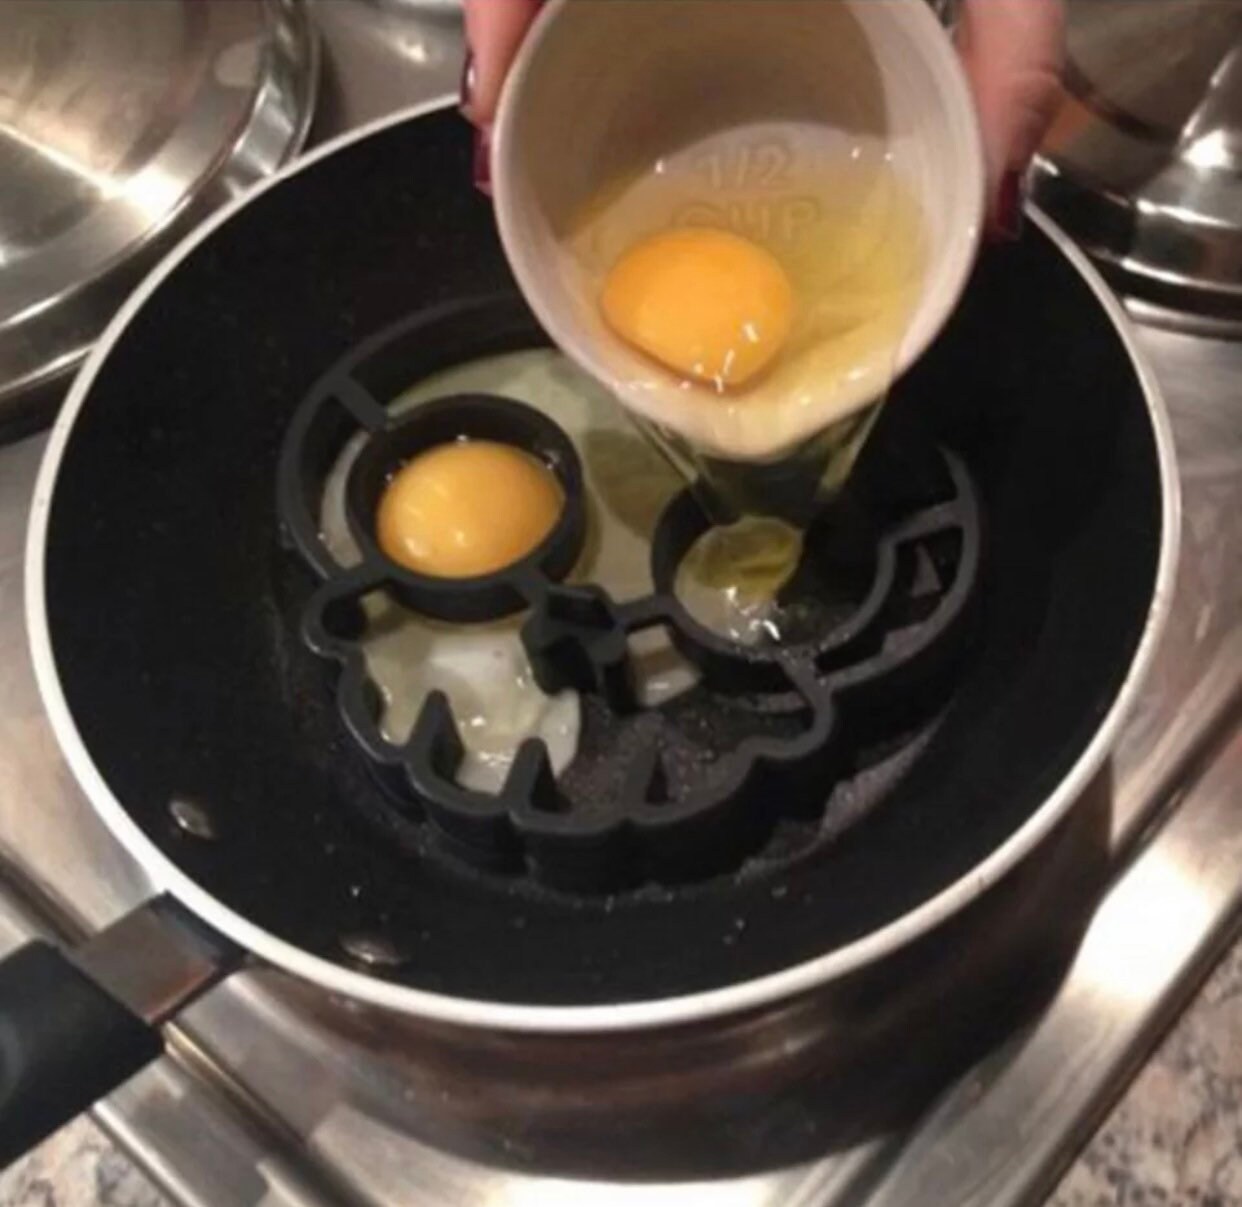 Lot de 2 moules à omelette en silicone en forme de tête de mort - Gadget  créatif de cuisine Crâne Silicone Oeuf Maker Dessin Animé Oeuf Maker Crâne Omelette  Moule